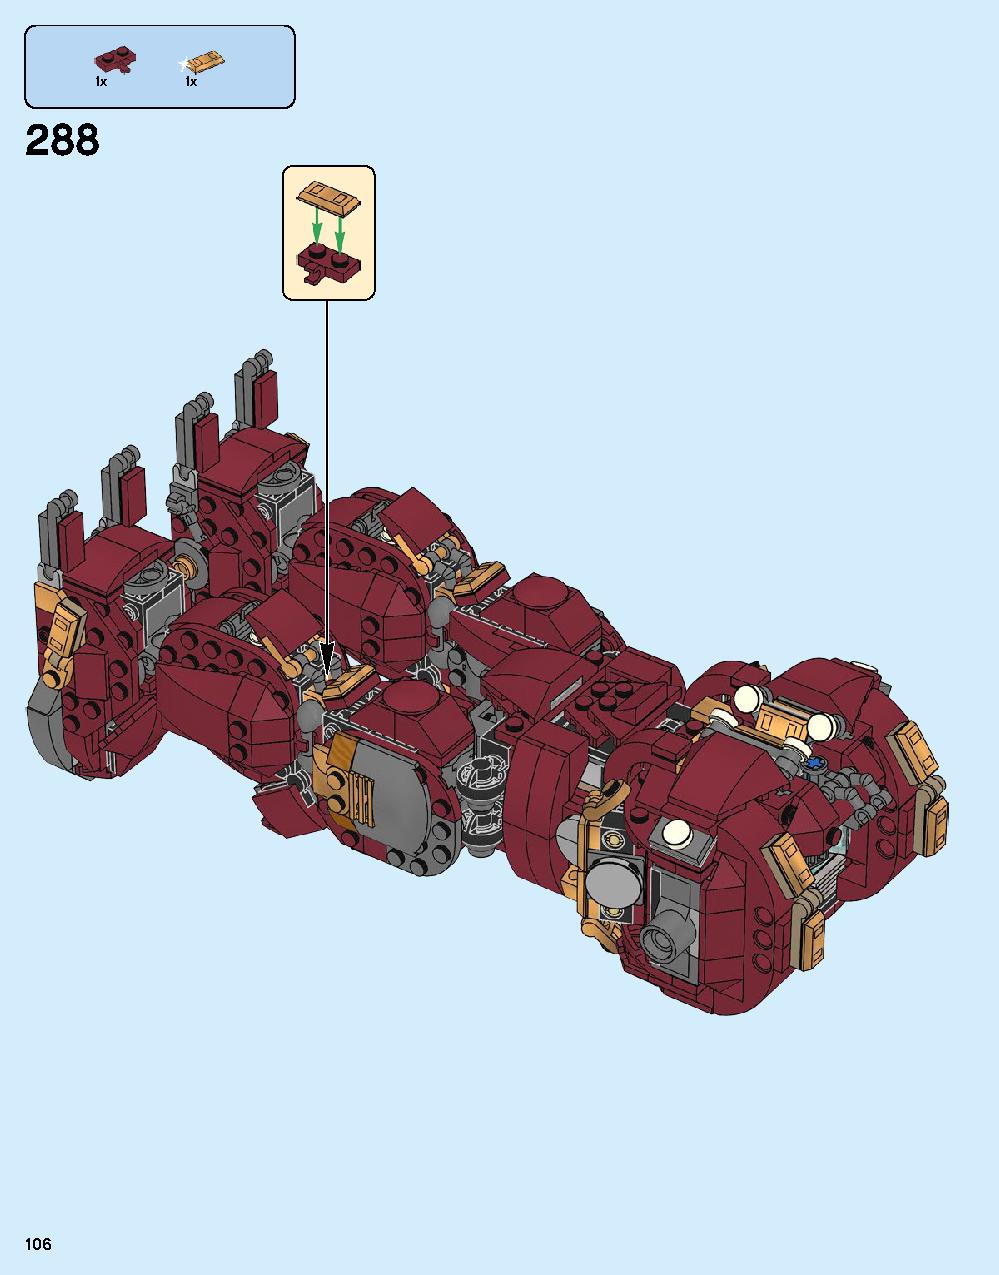 어벤져스 헐크버스터: 울트론 에디션 76105 레고 세트 제품정보 레고 조립설명서 106 page